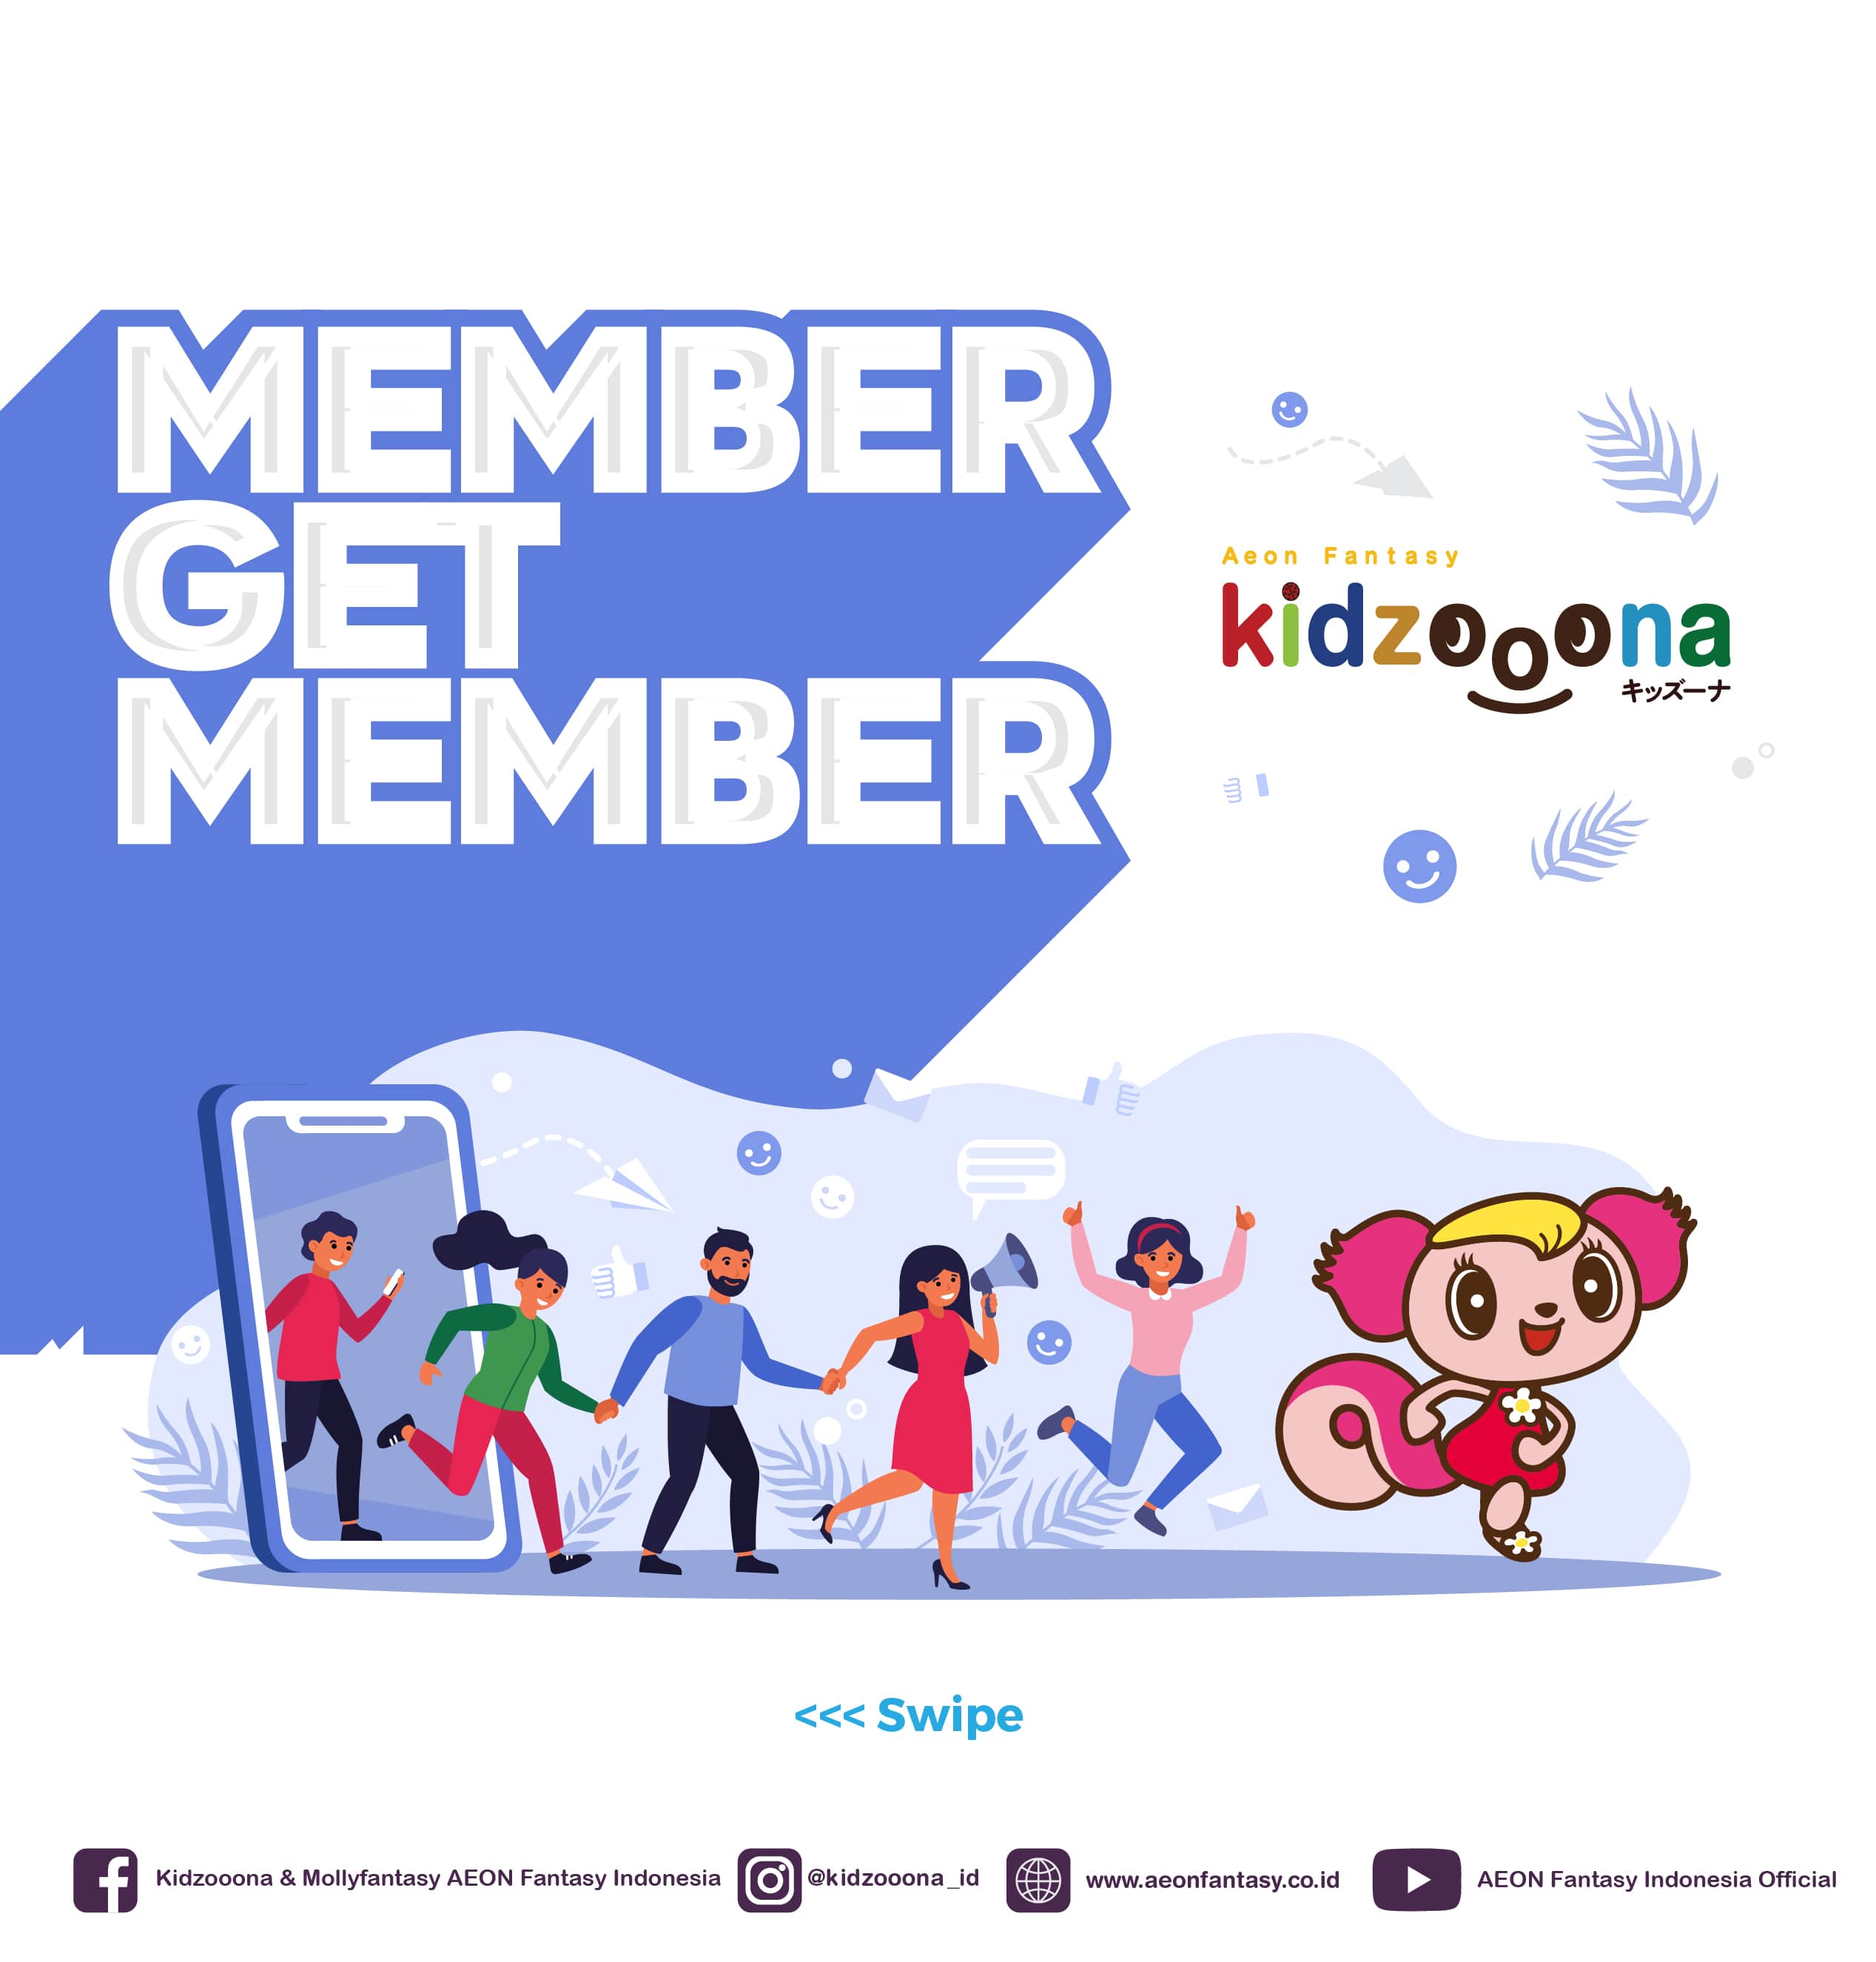 Member Get Member kidzooona